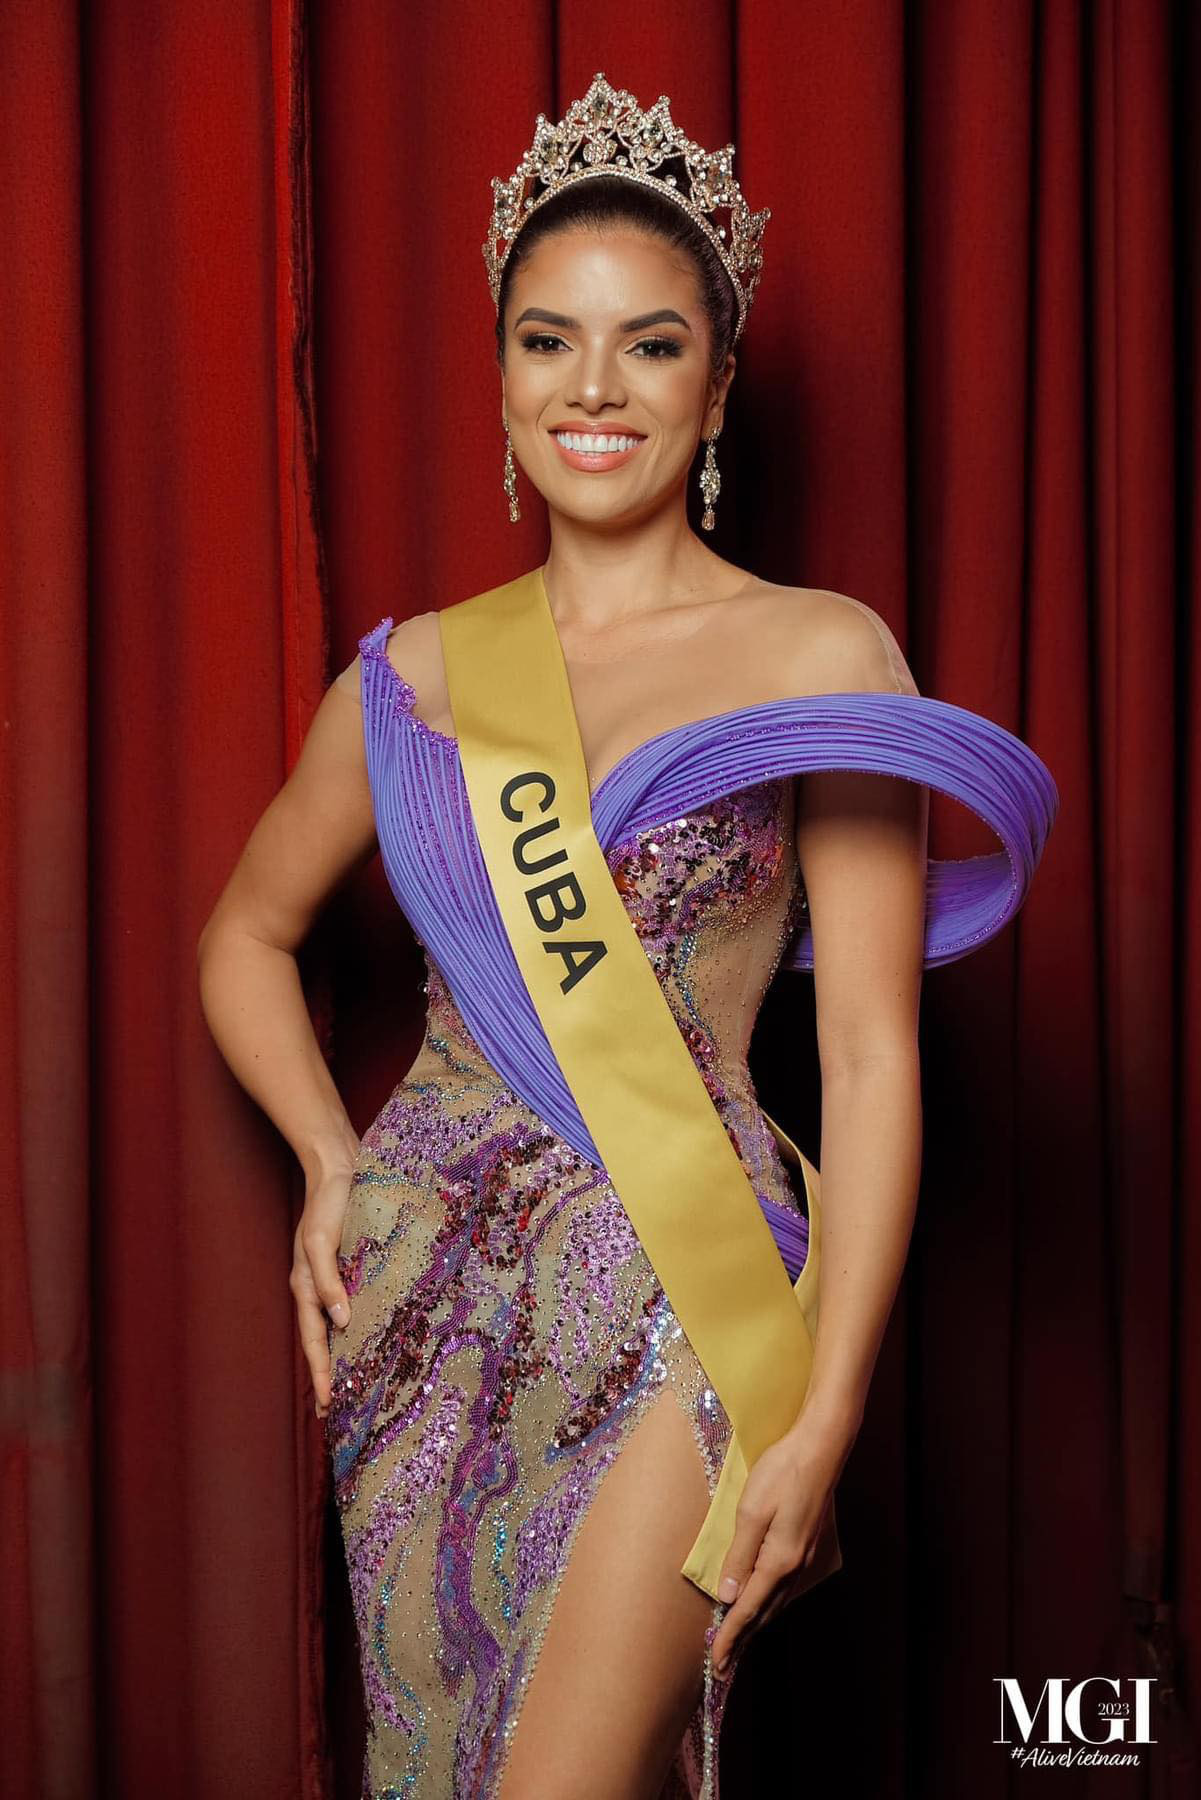 Hoa hậu Hòa bình Cuba rạng ngời trong thiết kế mang sắc tím làm chủ đạo - Ảnh: BTC